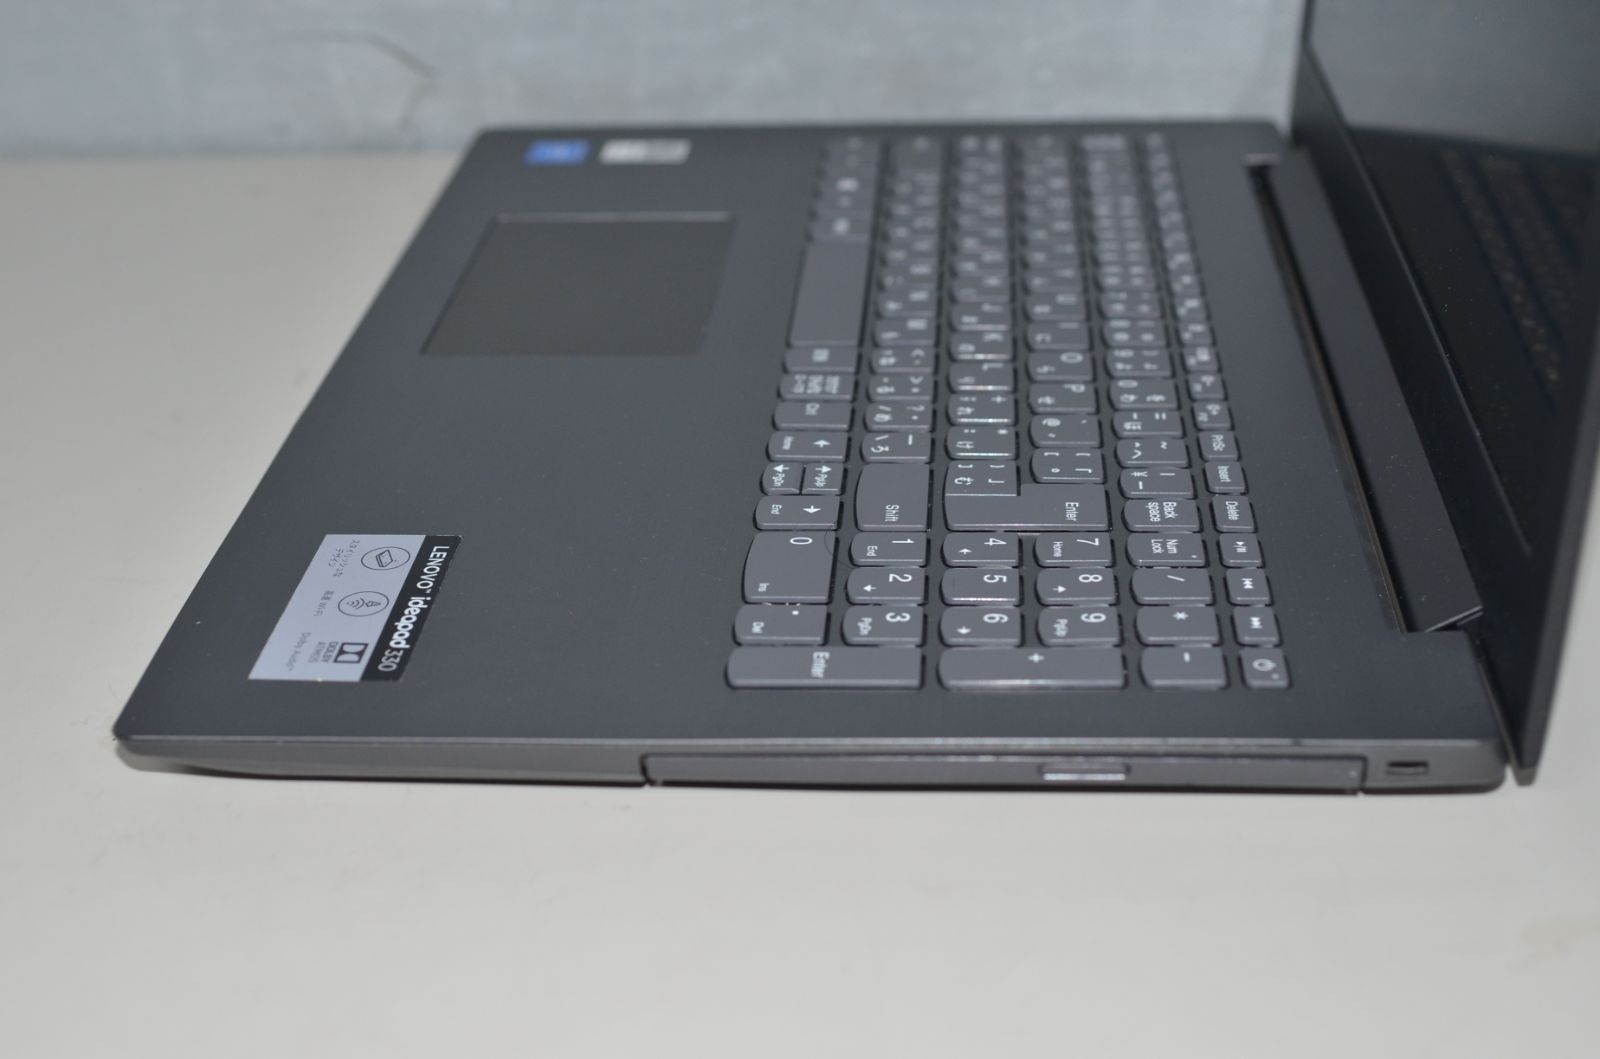 中古良品ノートパソコン Windows11+office LENOVO Ideapad 330 Celeron 